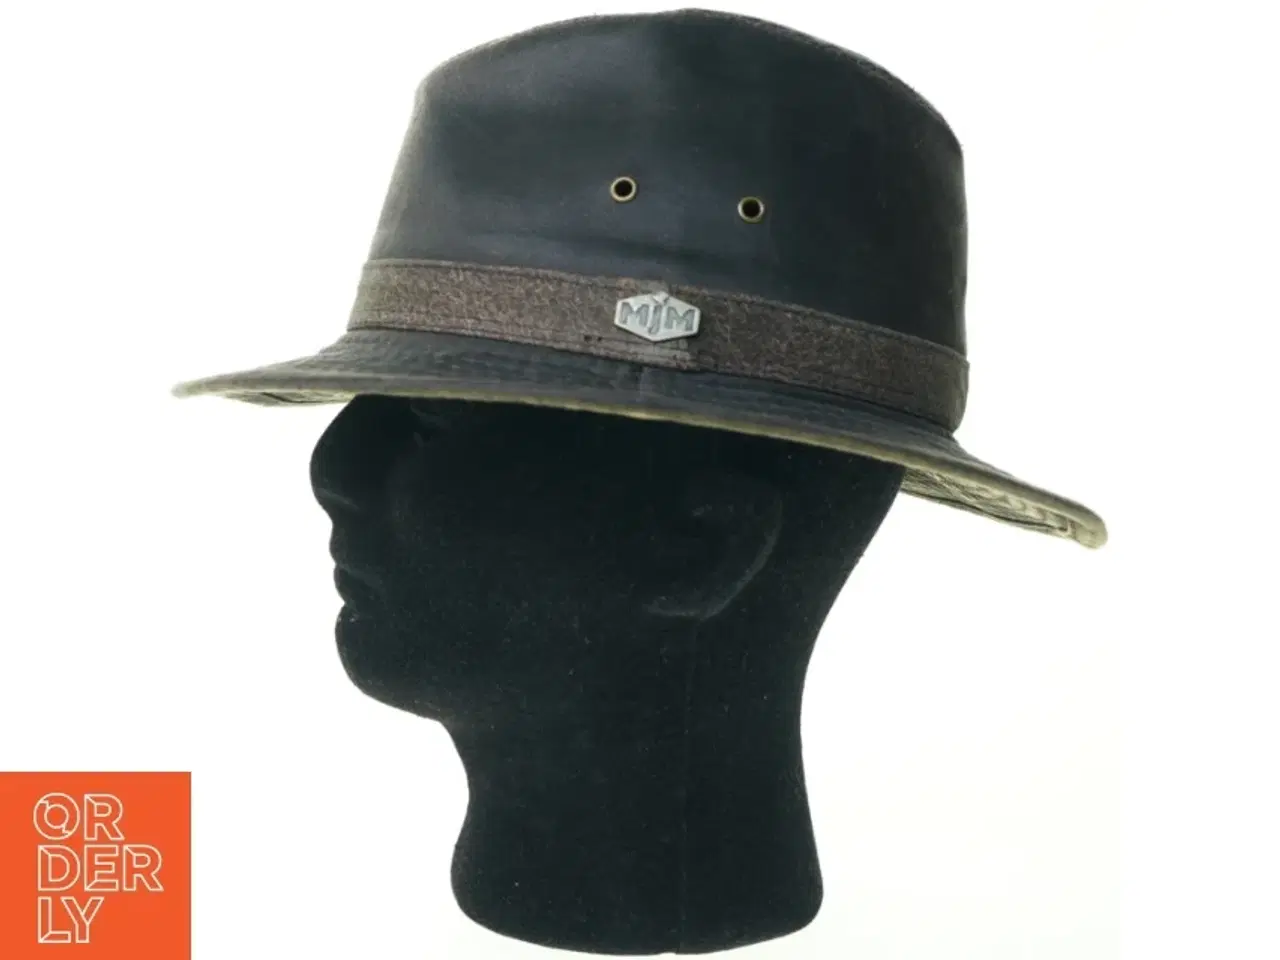 Billede 1 - Oakwood hat fra MJM (str. M = 58 cm)